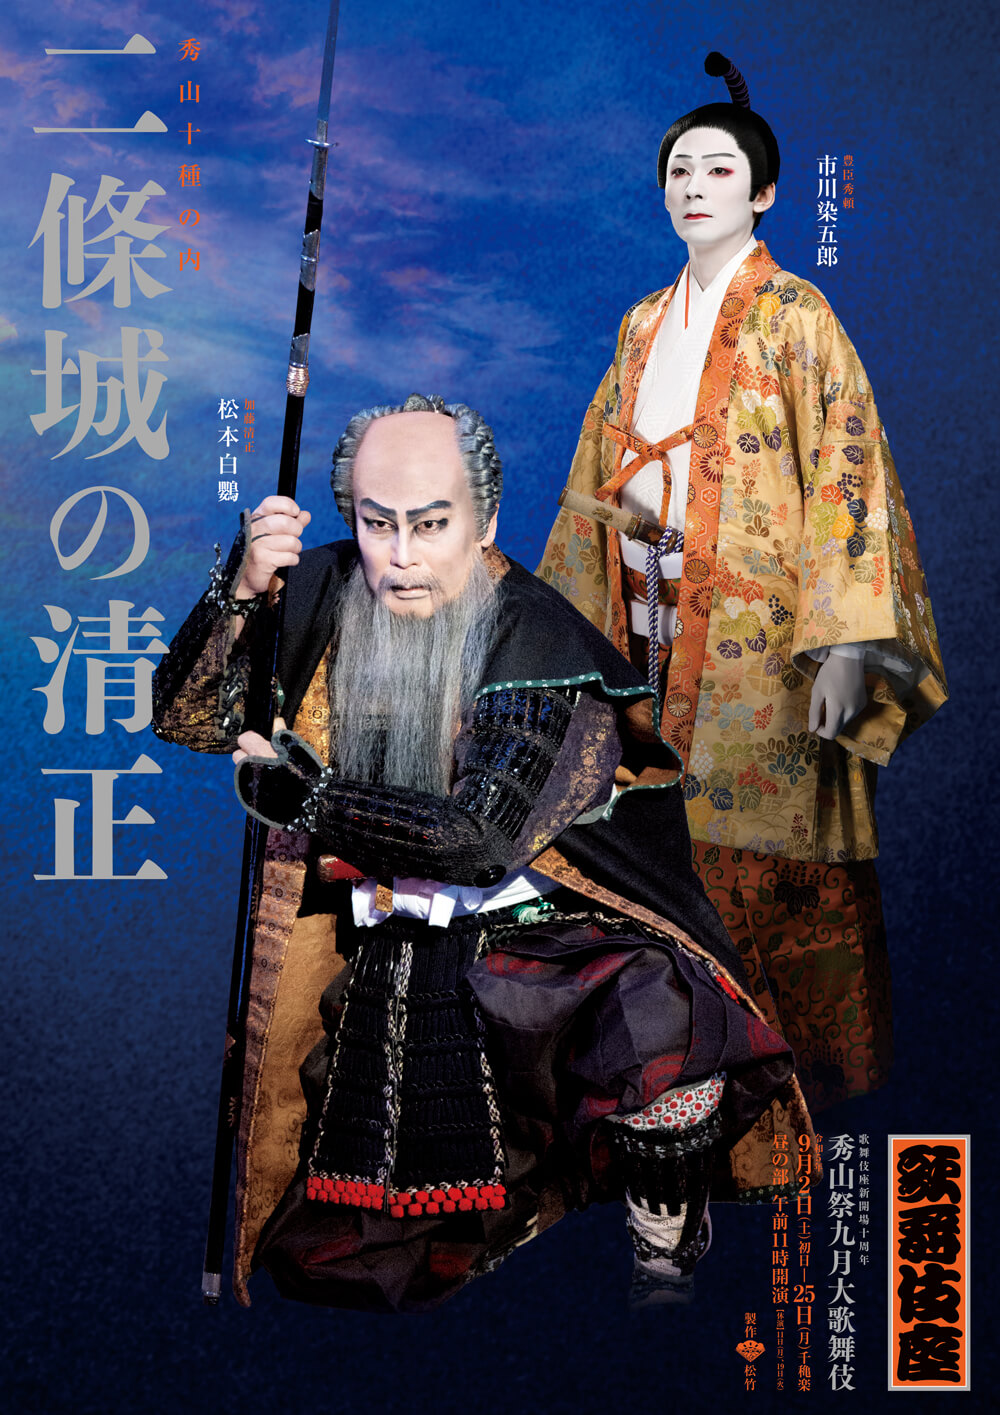 歌舞伎座『二條城の清正』特別ポスター公開